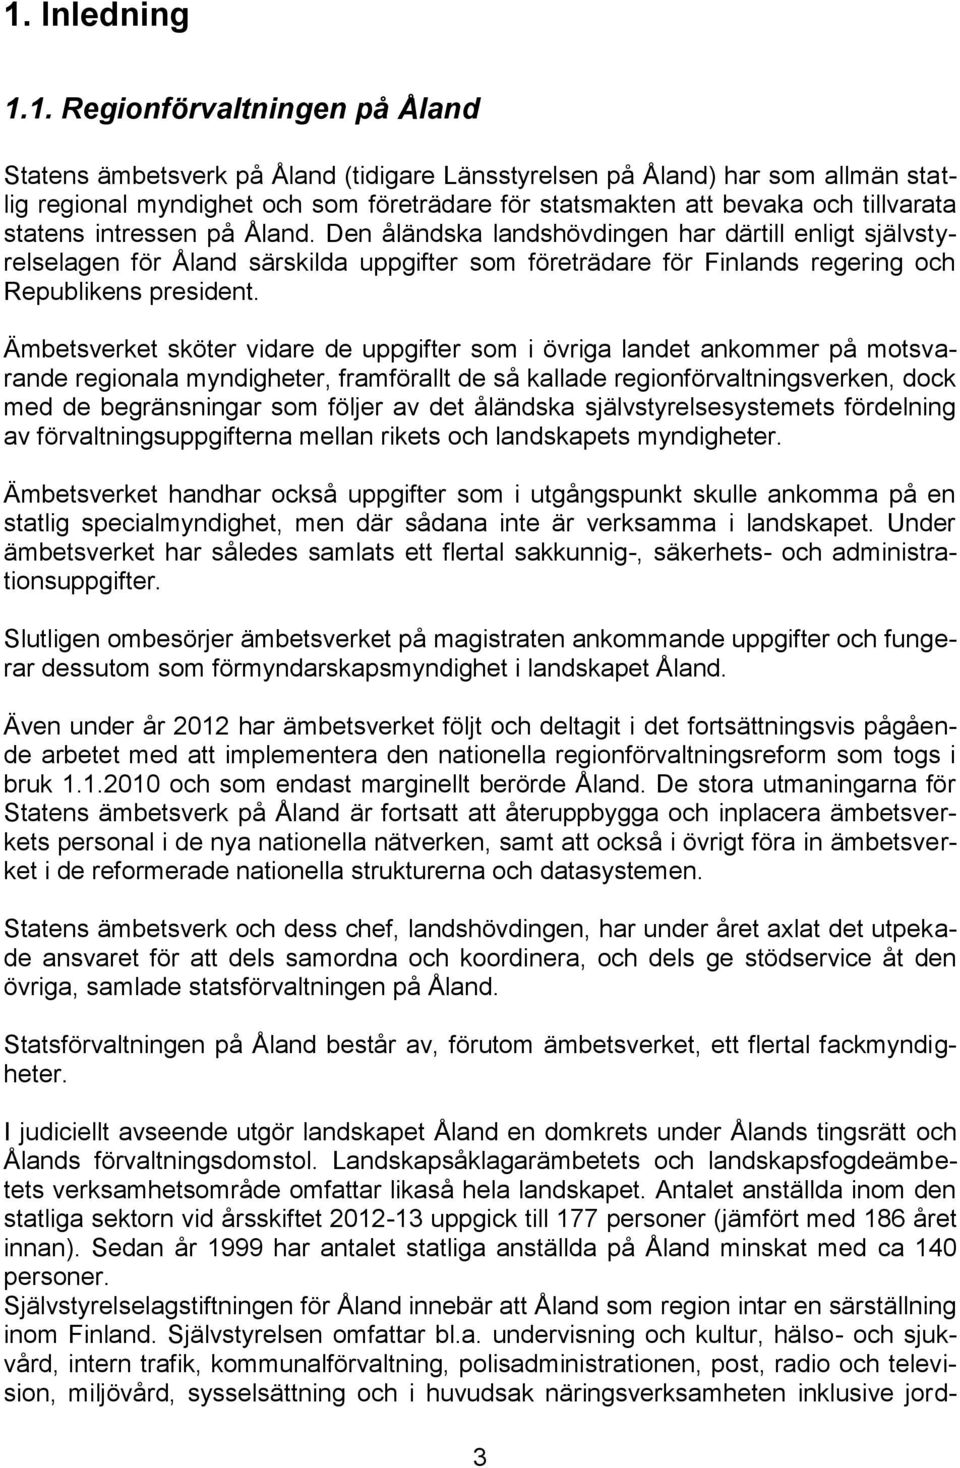 Den åländska landshövdingen har därtill enligt självstyrelselagen för Åland särskilda uppgifter som företrädare för Finlands regering och Republikens president.